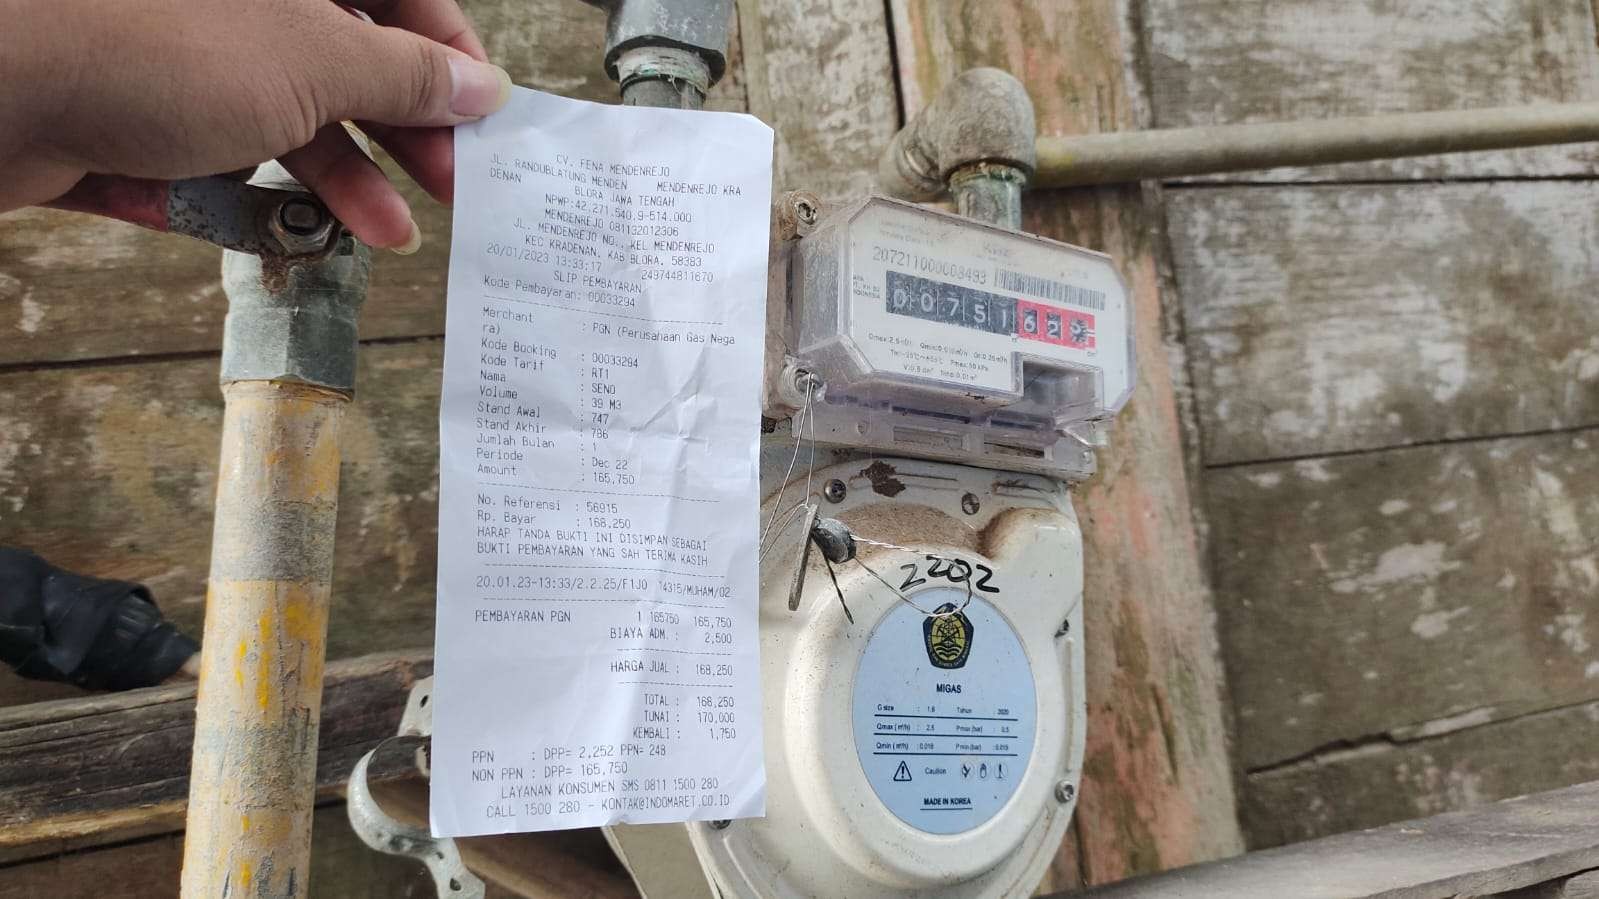 Ramai-ramai keluhkan mahalnya tarif gas rumah tangga di Blora. (Foto: Ahmad Sampurno/Ngopibareng.id)